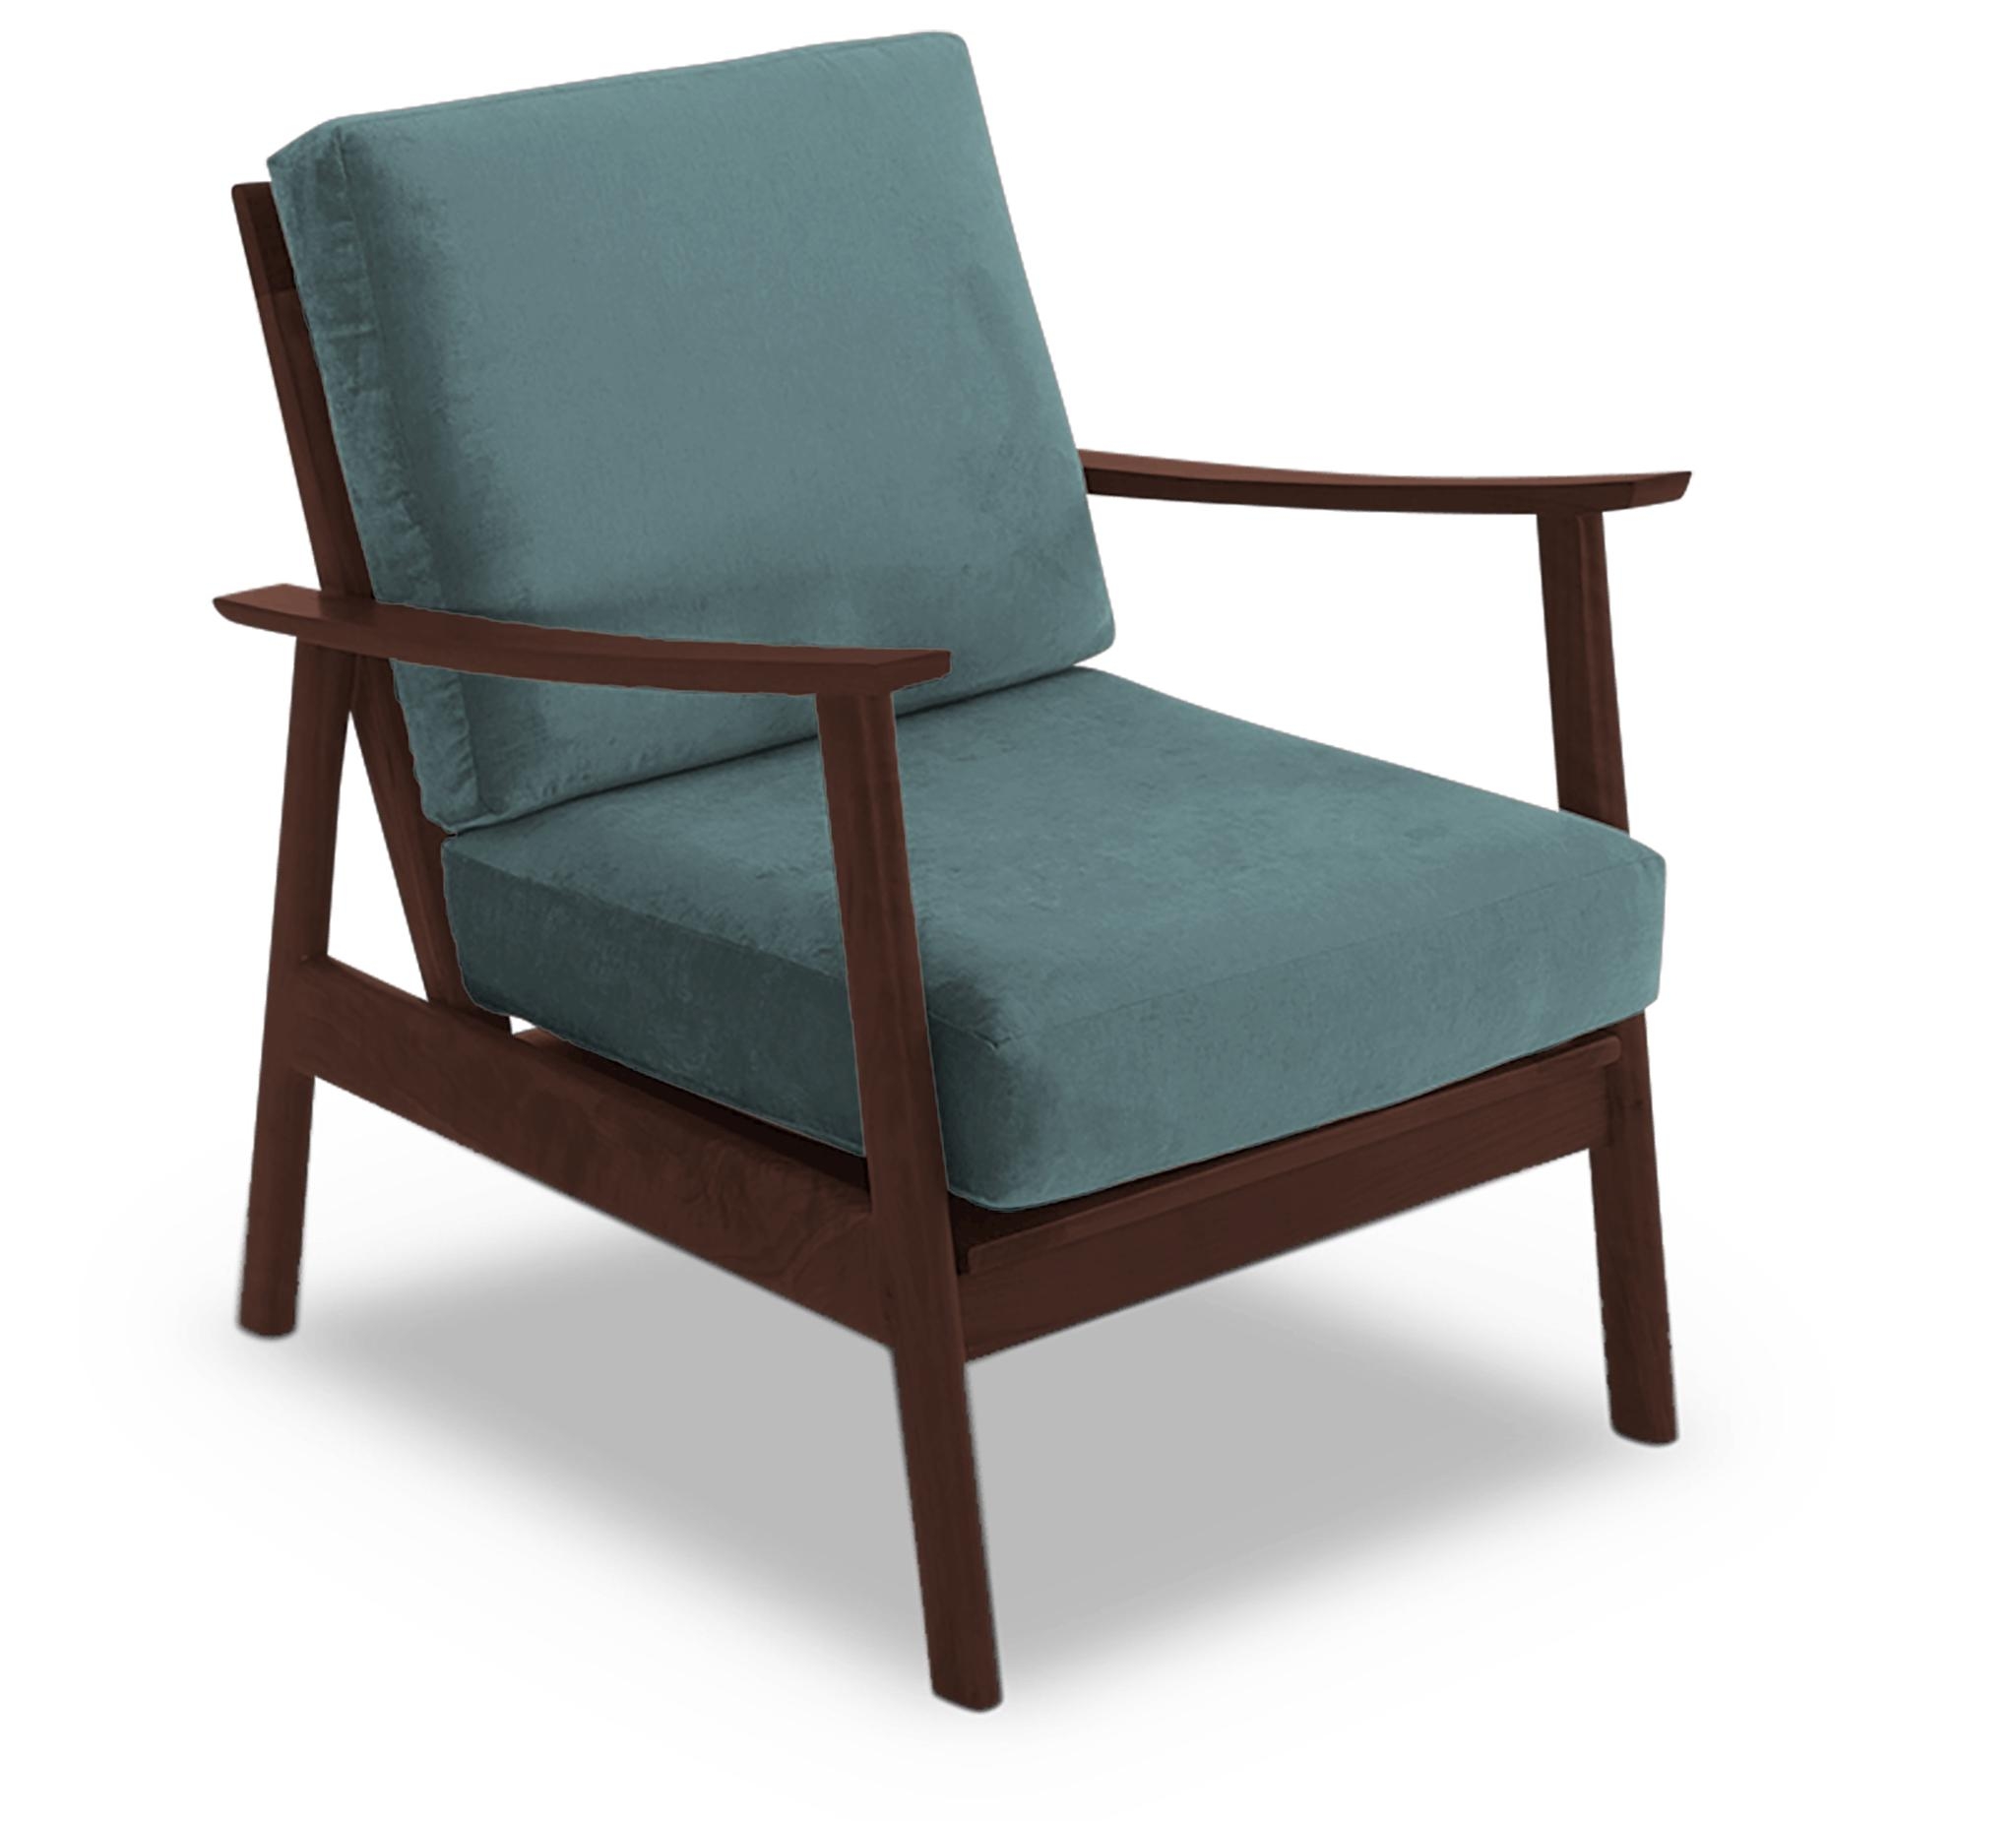 Blue Paley Mid Century Modern Chair - Dawson Slate - Walnut - Image 1